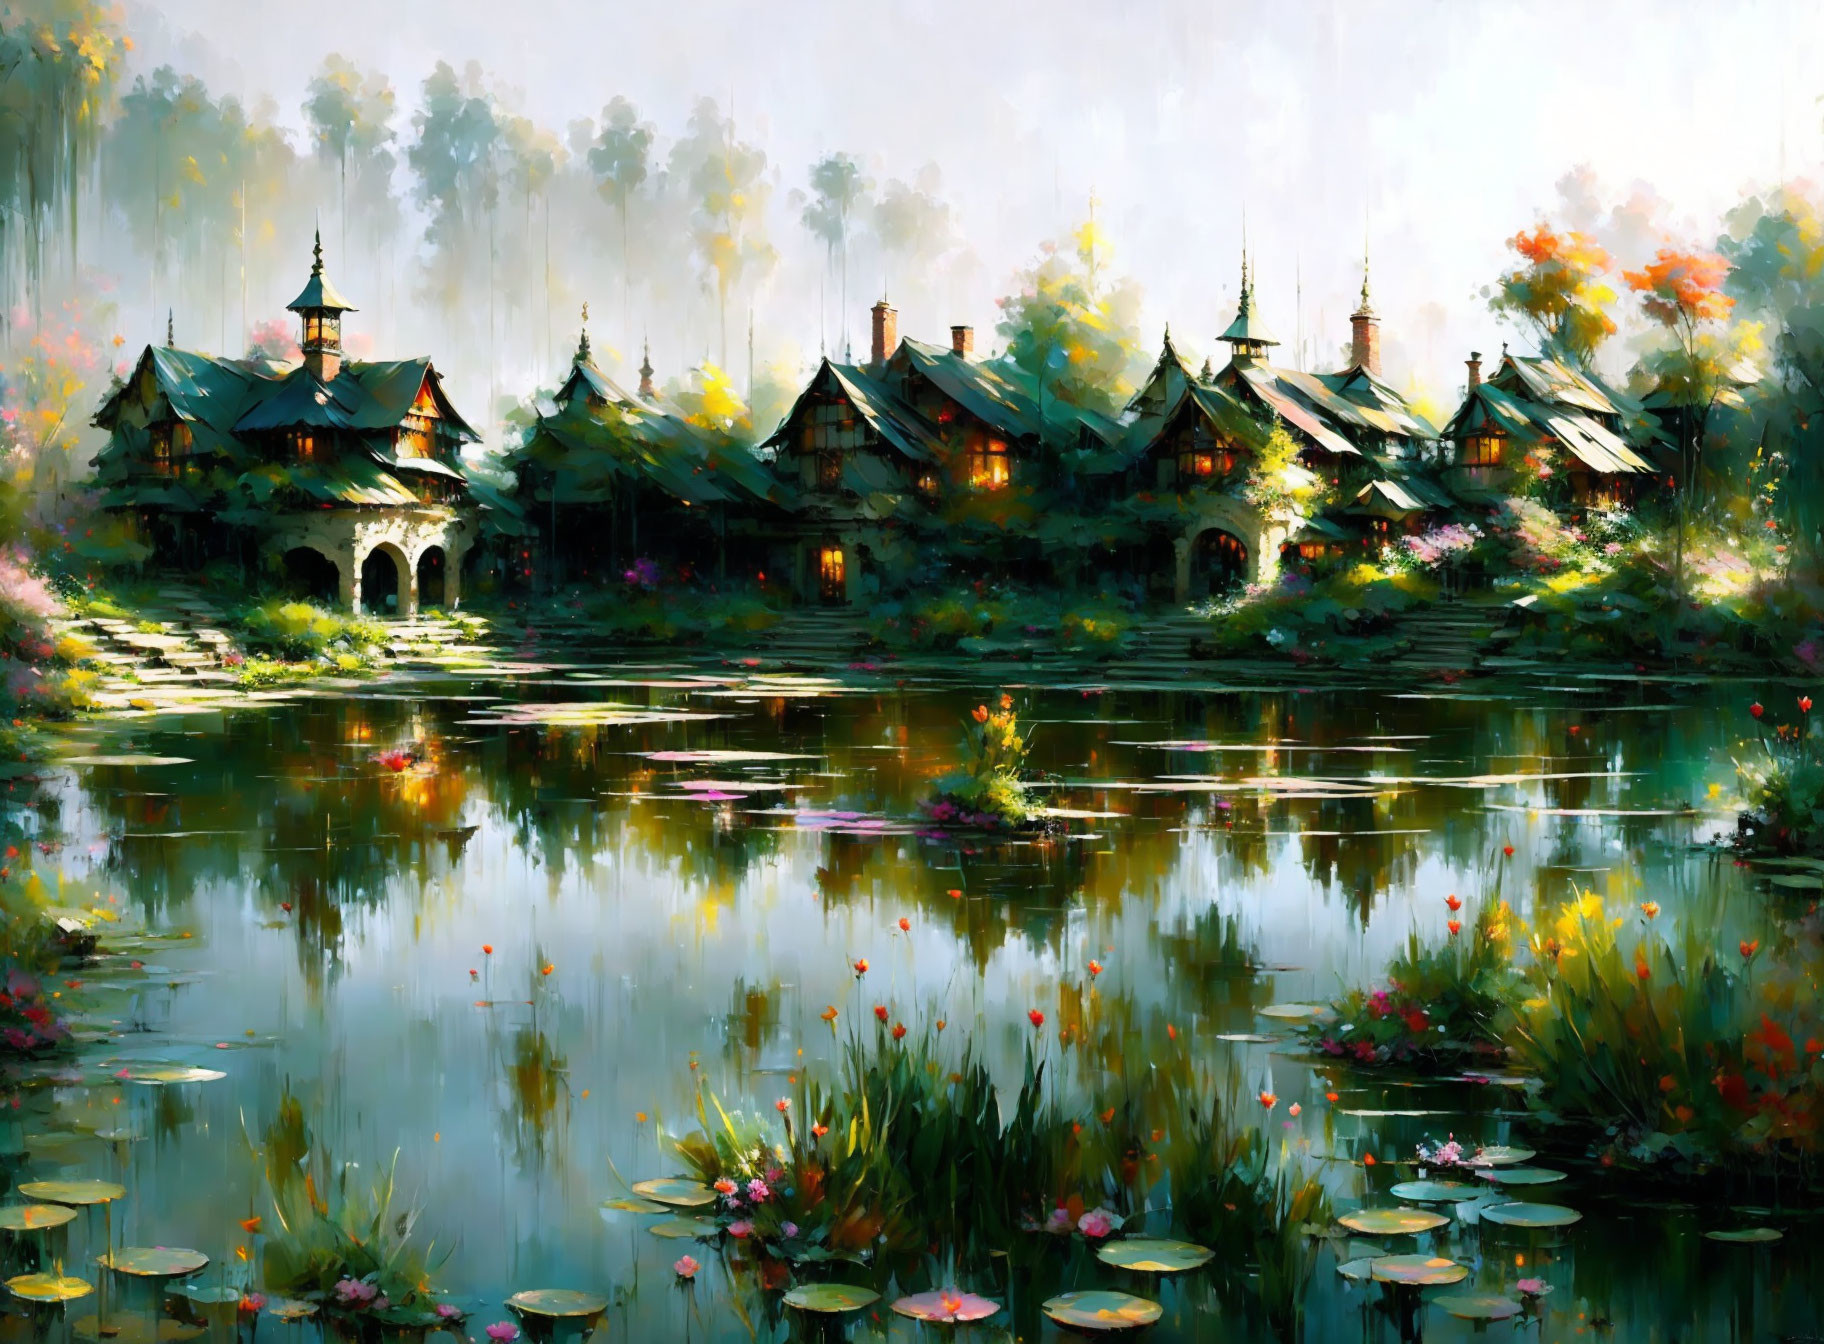  village pond